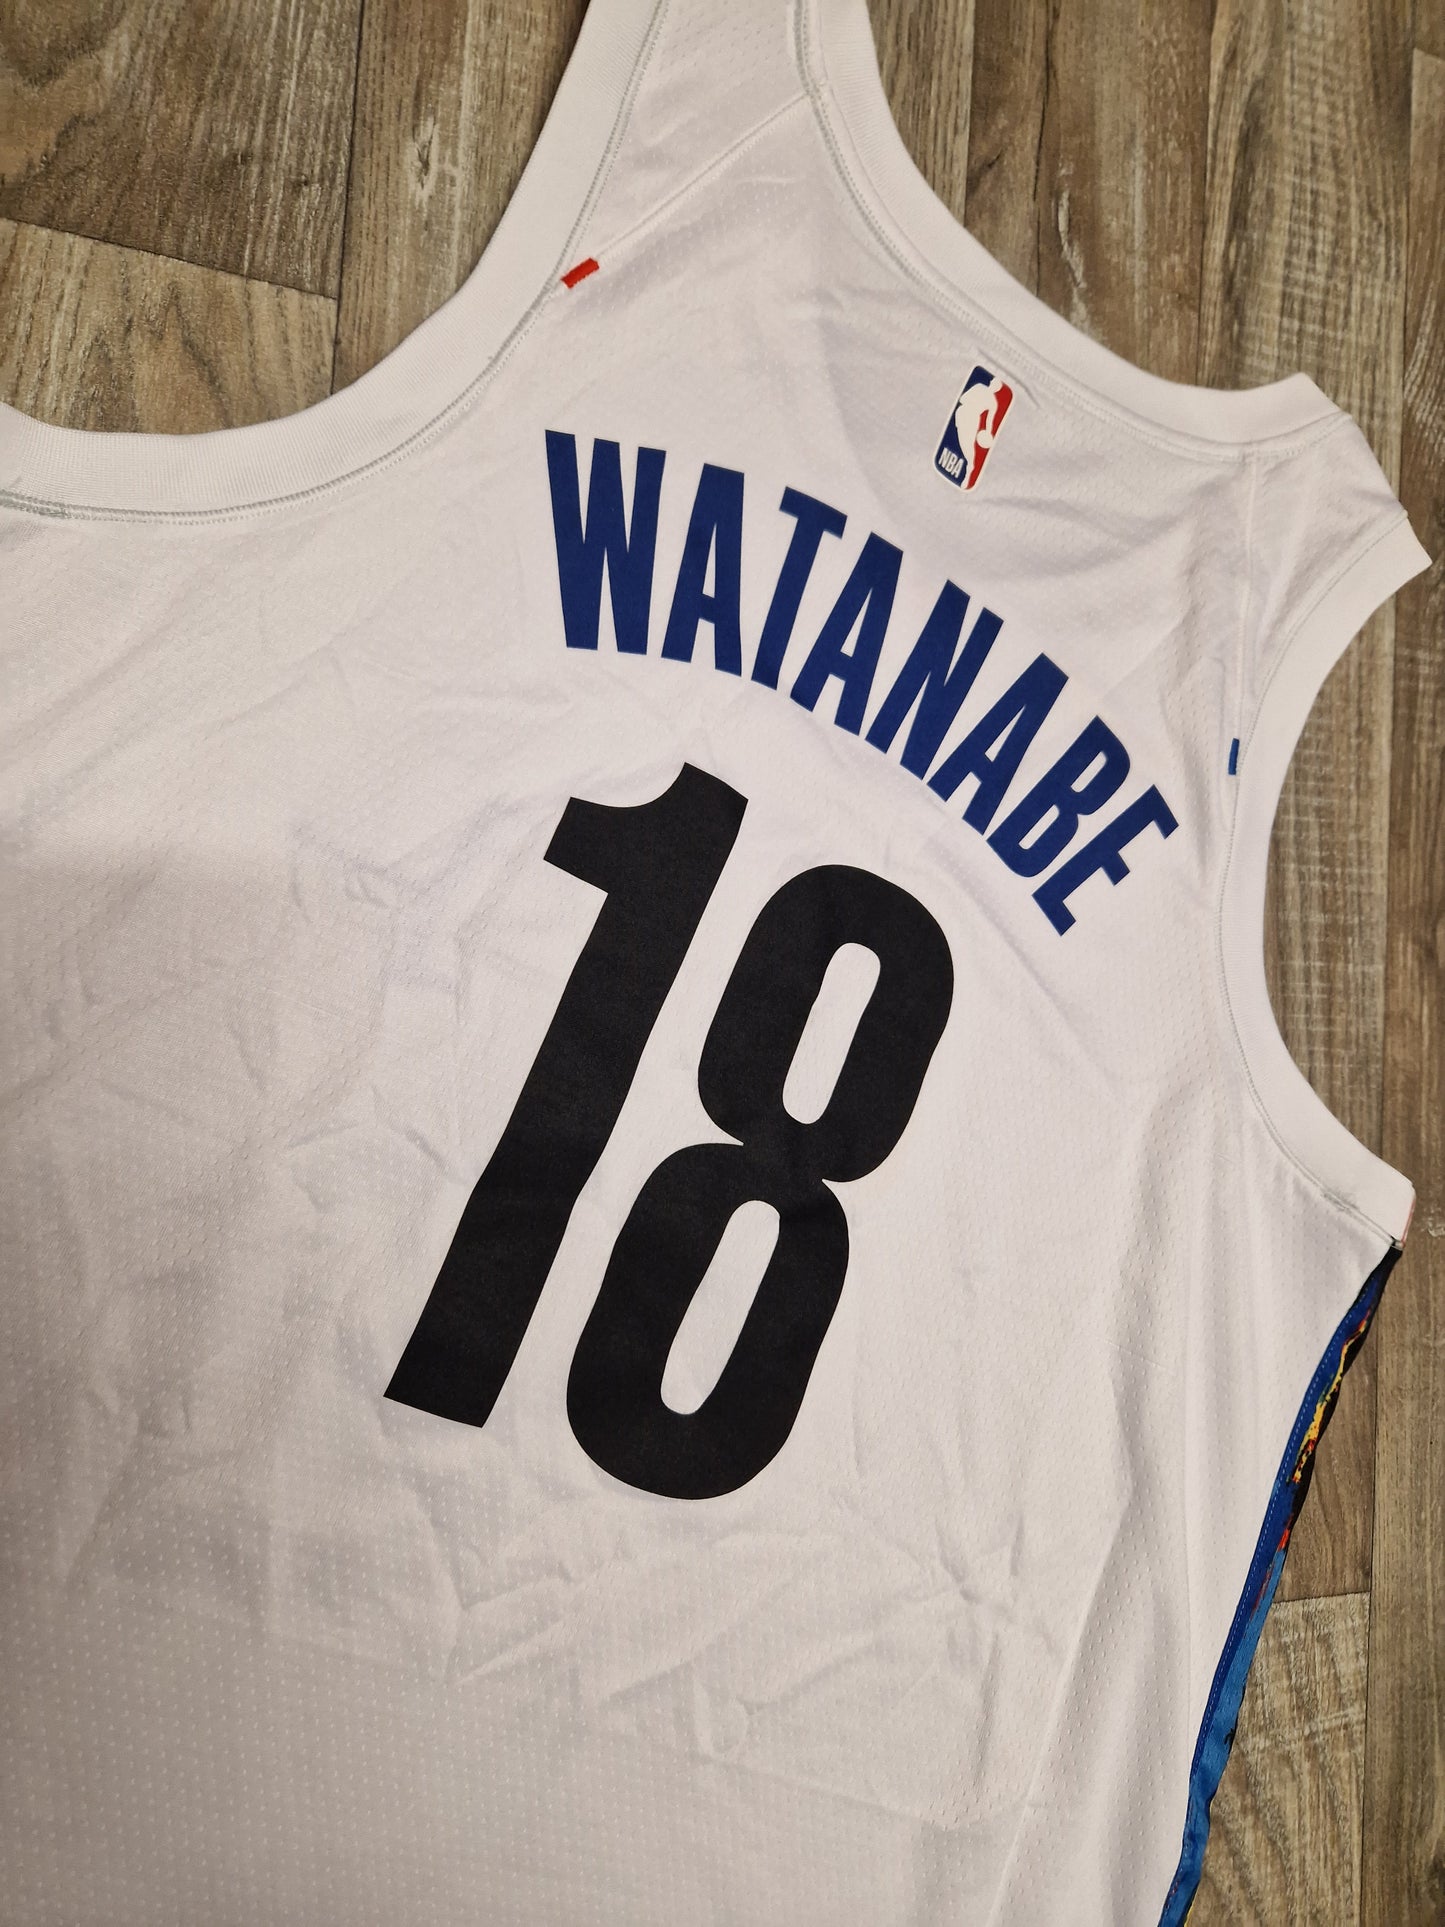 Yuta Watanabe Brooklyn Nets Jersey Size Large